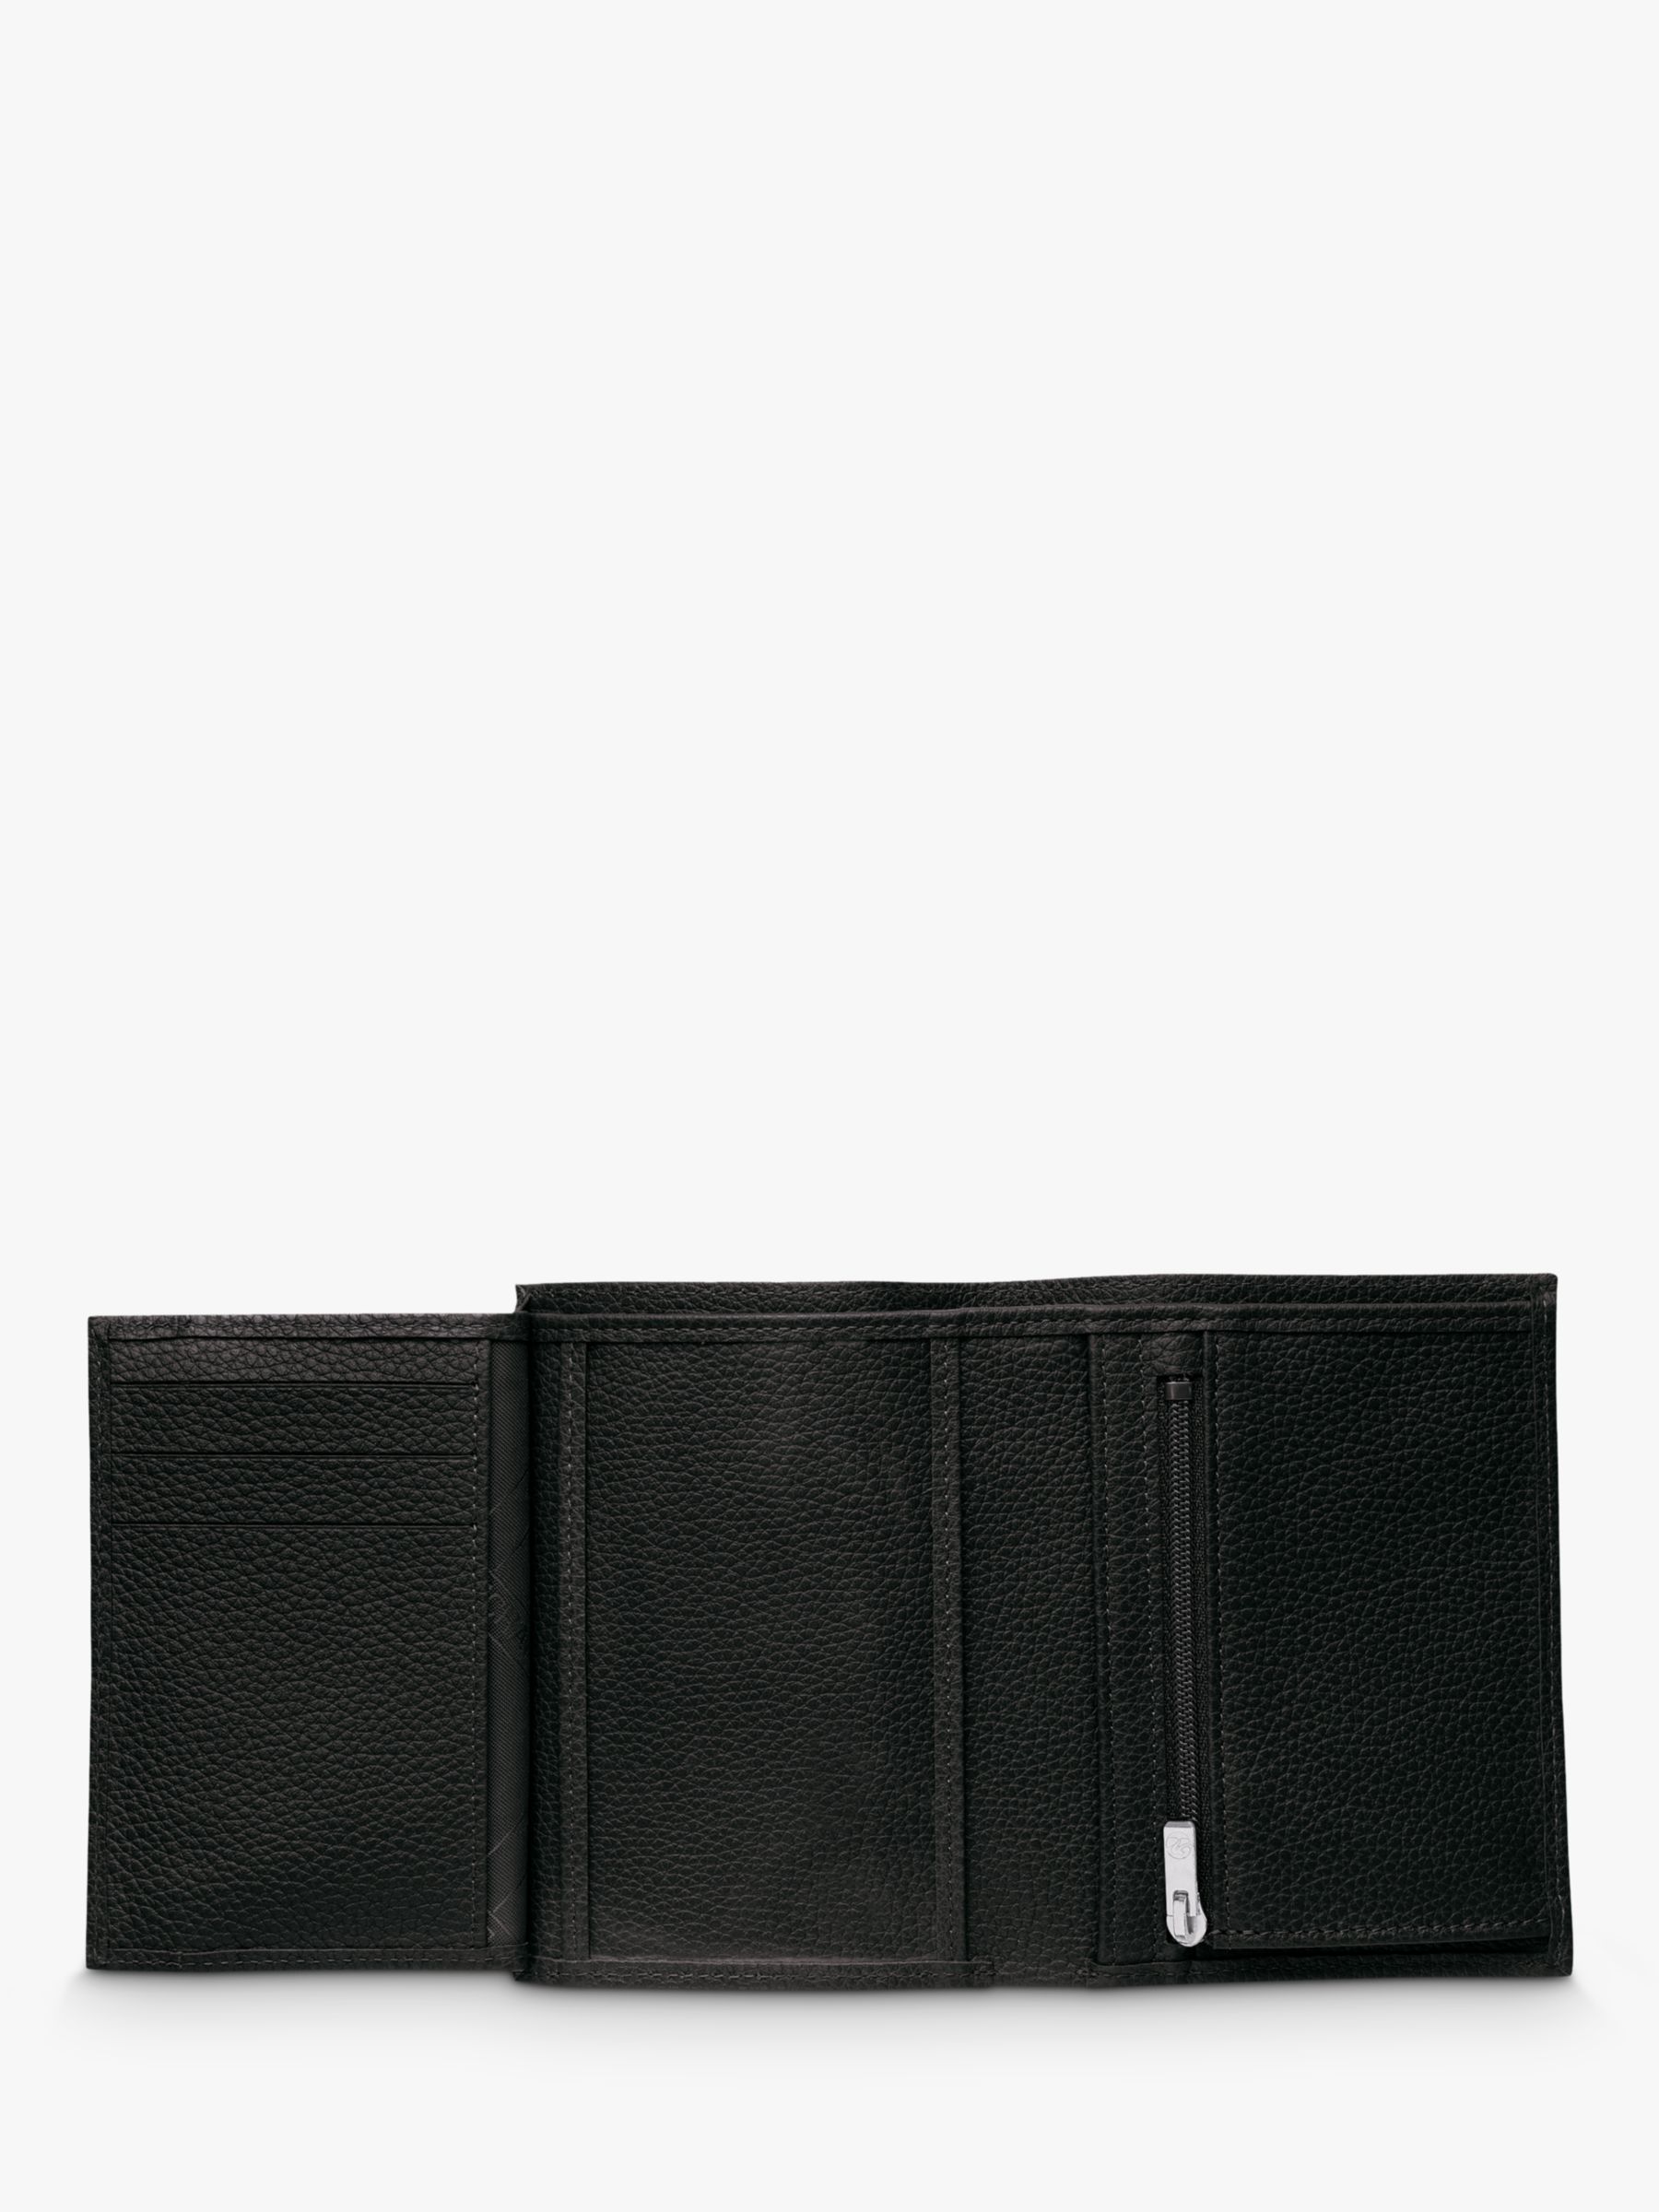 Longchamp Le Foulonné Leather Tri-Fold Wallet, Black